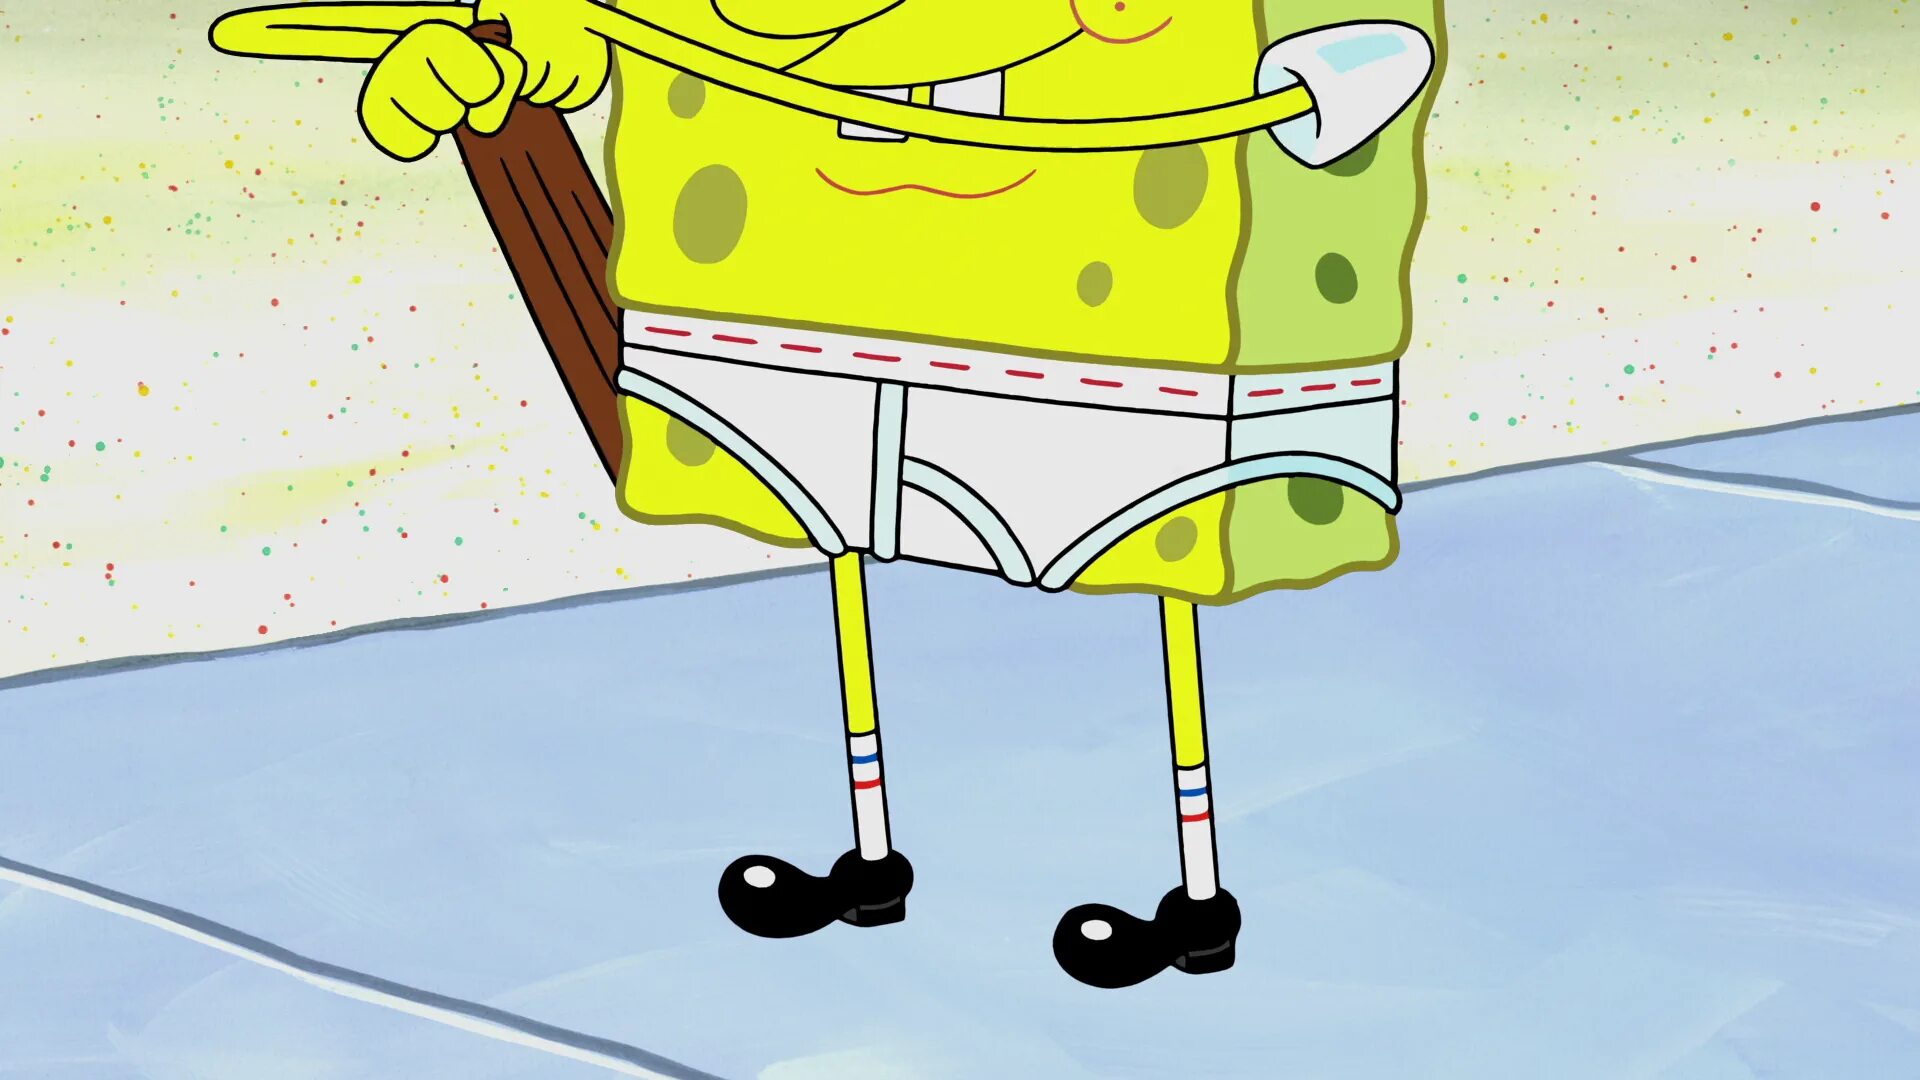 Spongebob 14. Губка Боб длинные штаны. Губка Боб в длинных джинсах. Спанч Боб багажник штаны \. Штаны губка Боб купить.